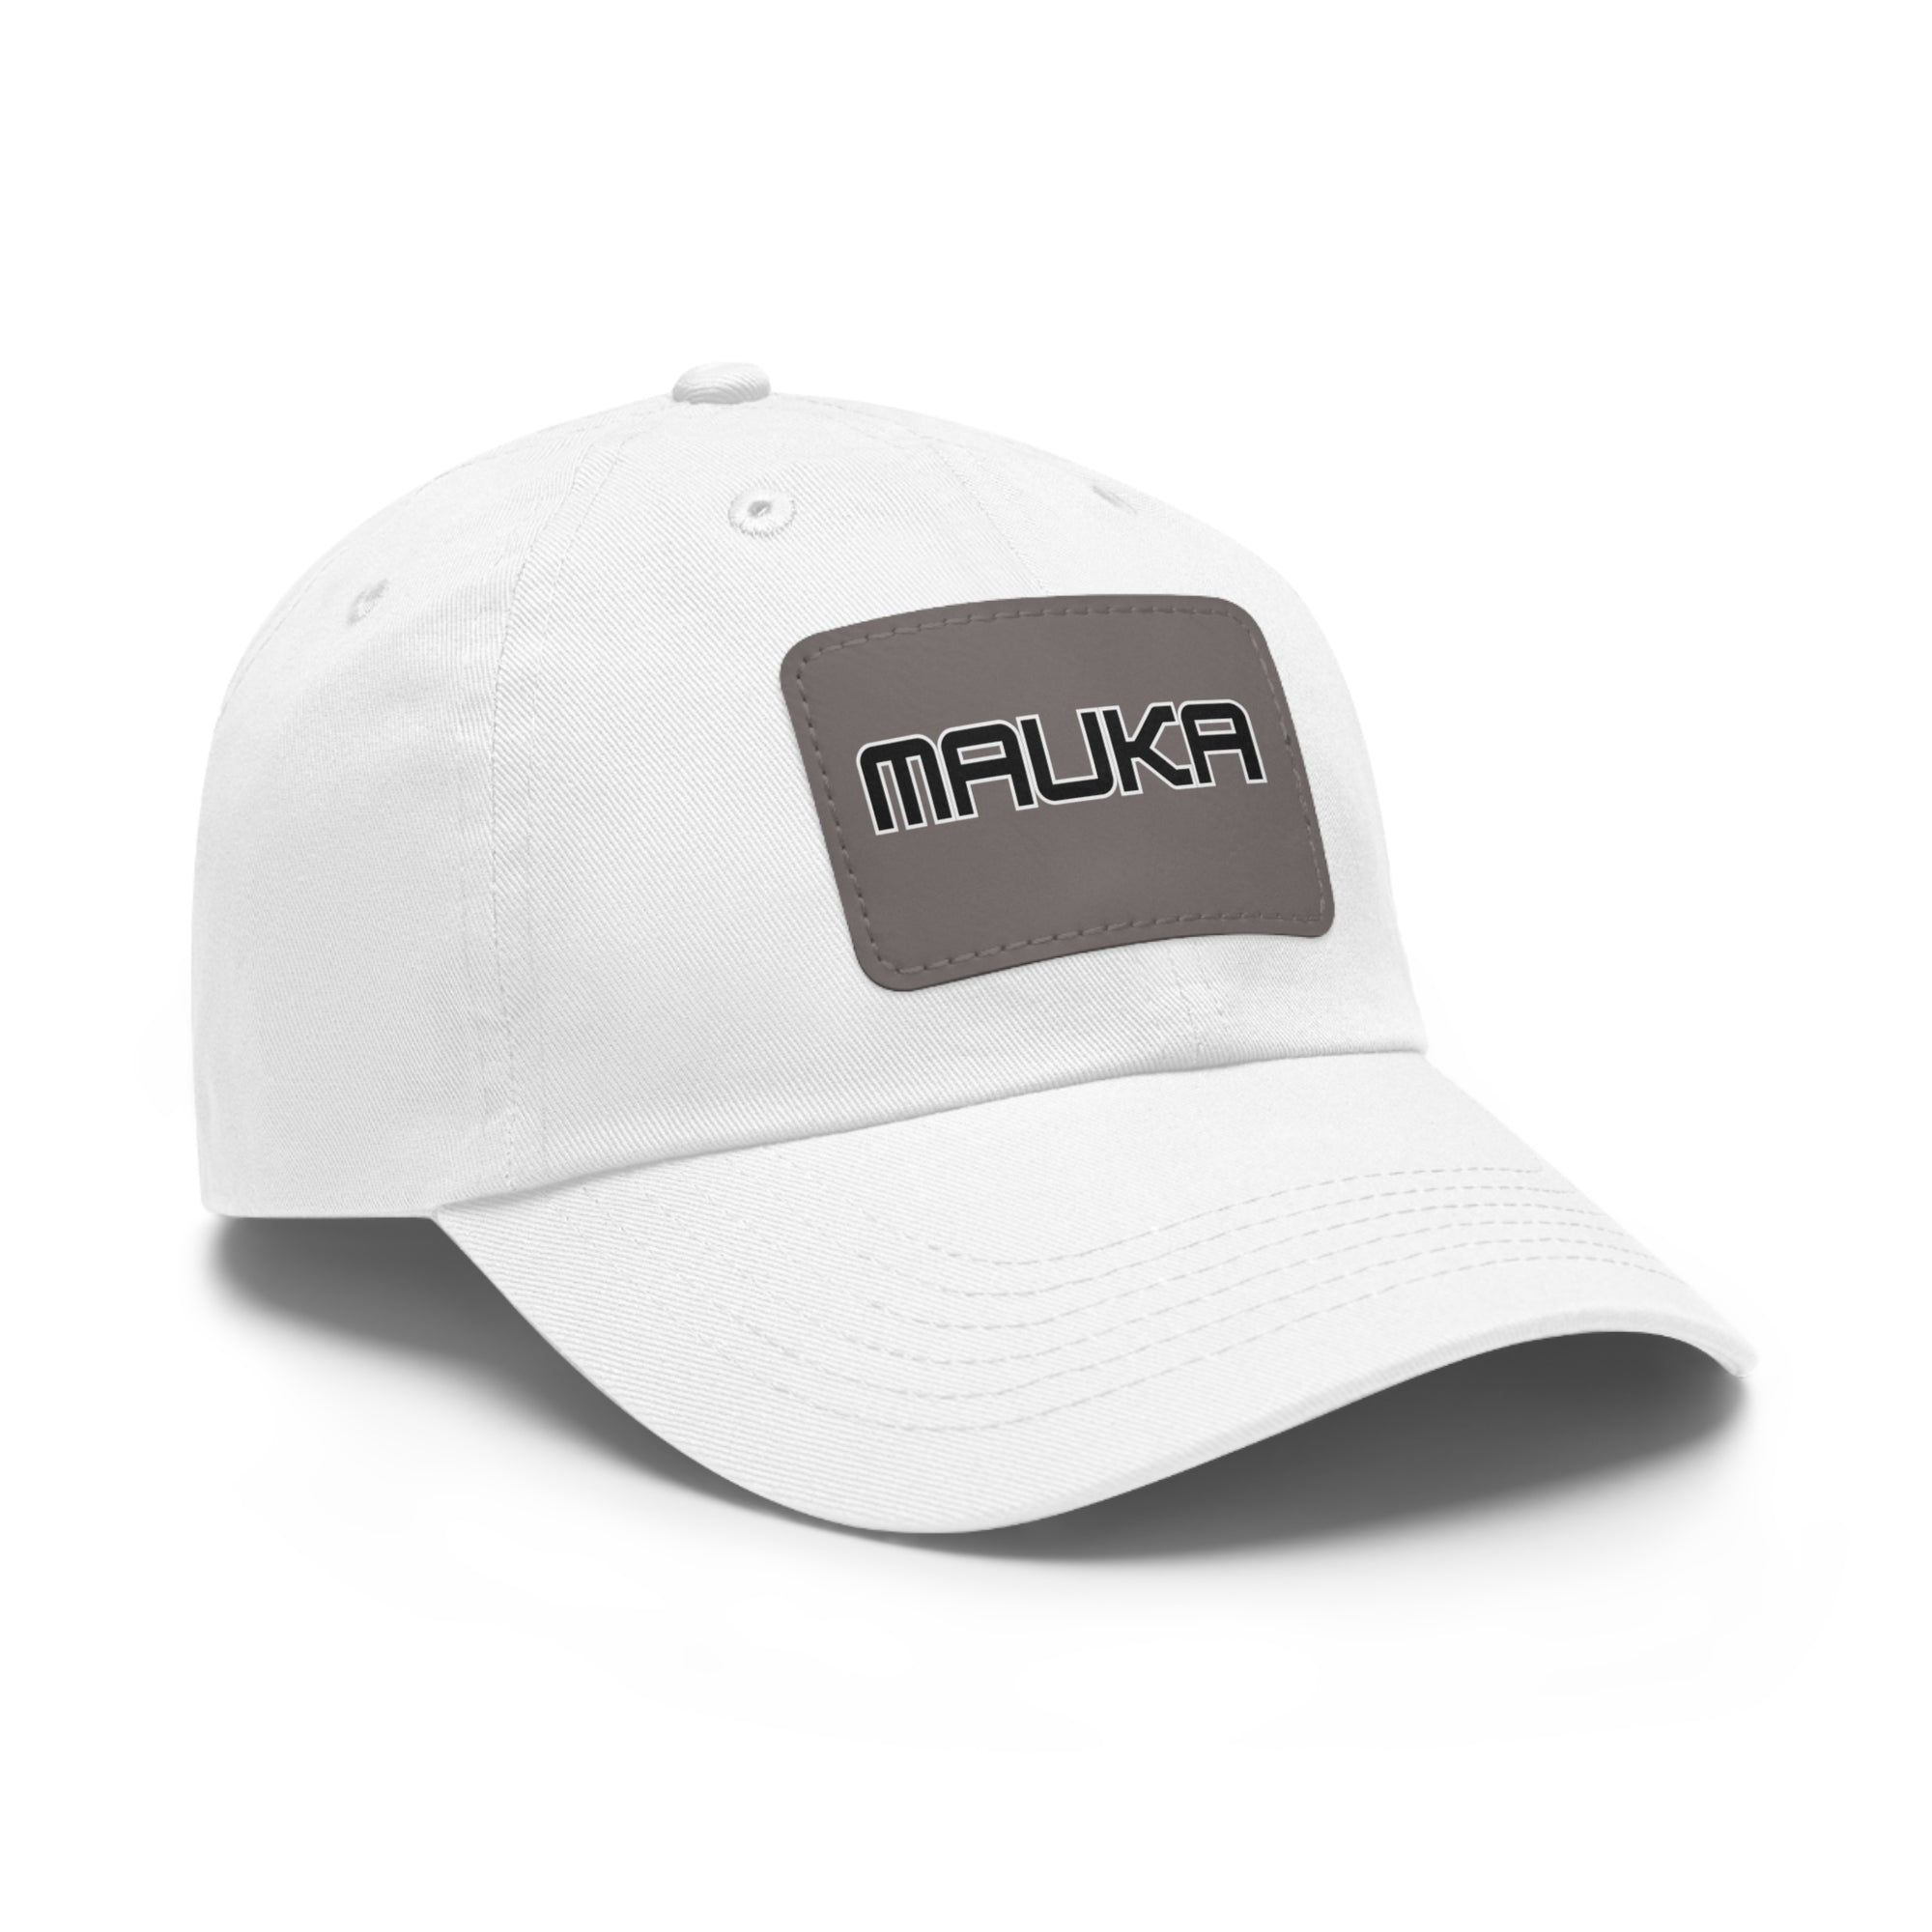 MAUKA Low Profile Hat